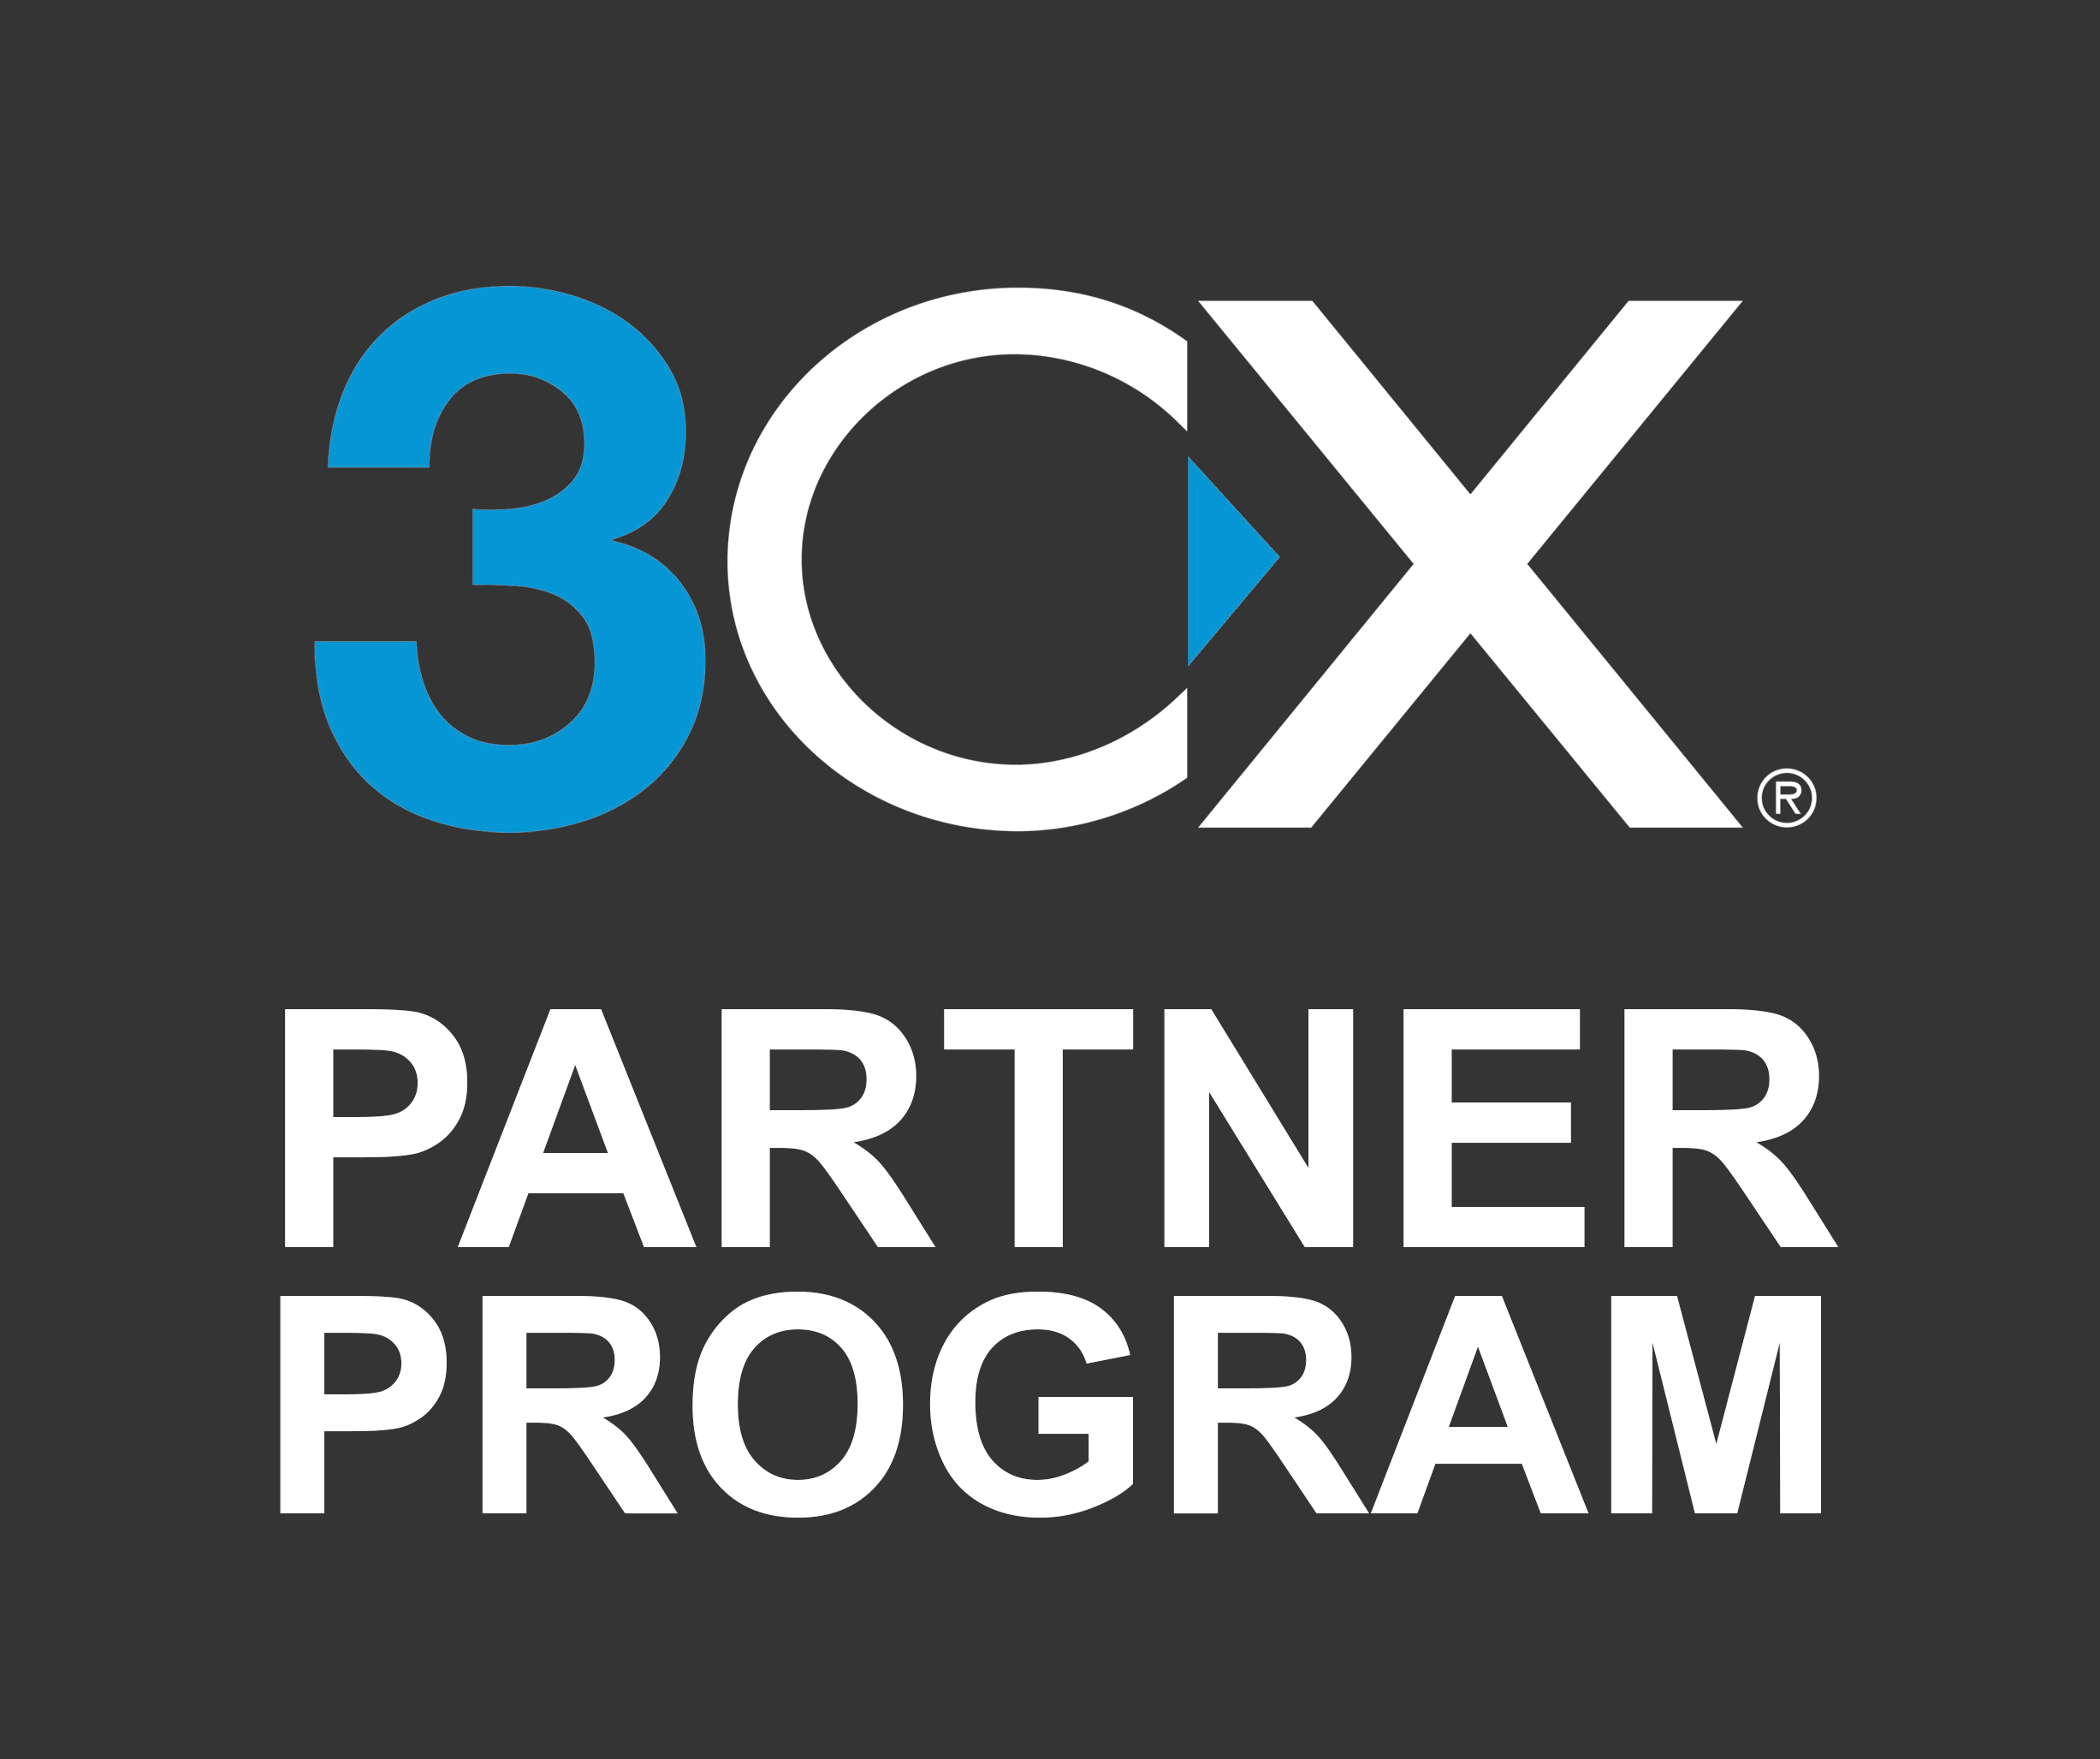 3CX_Partner_Program